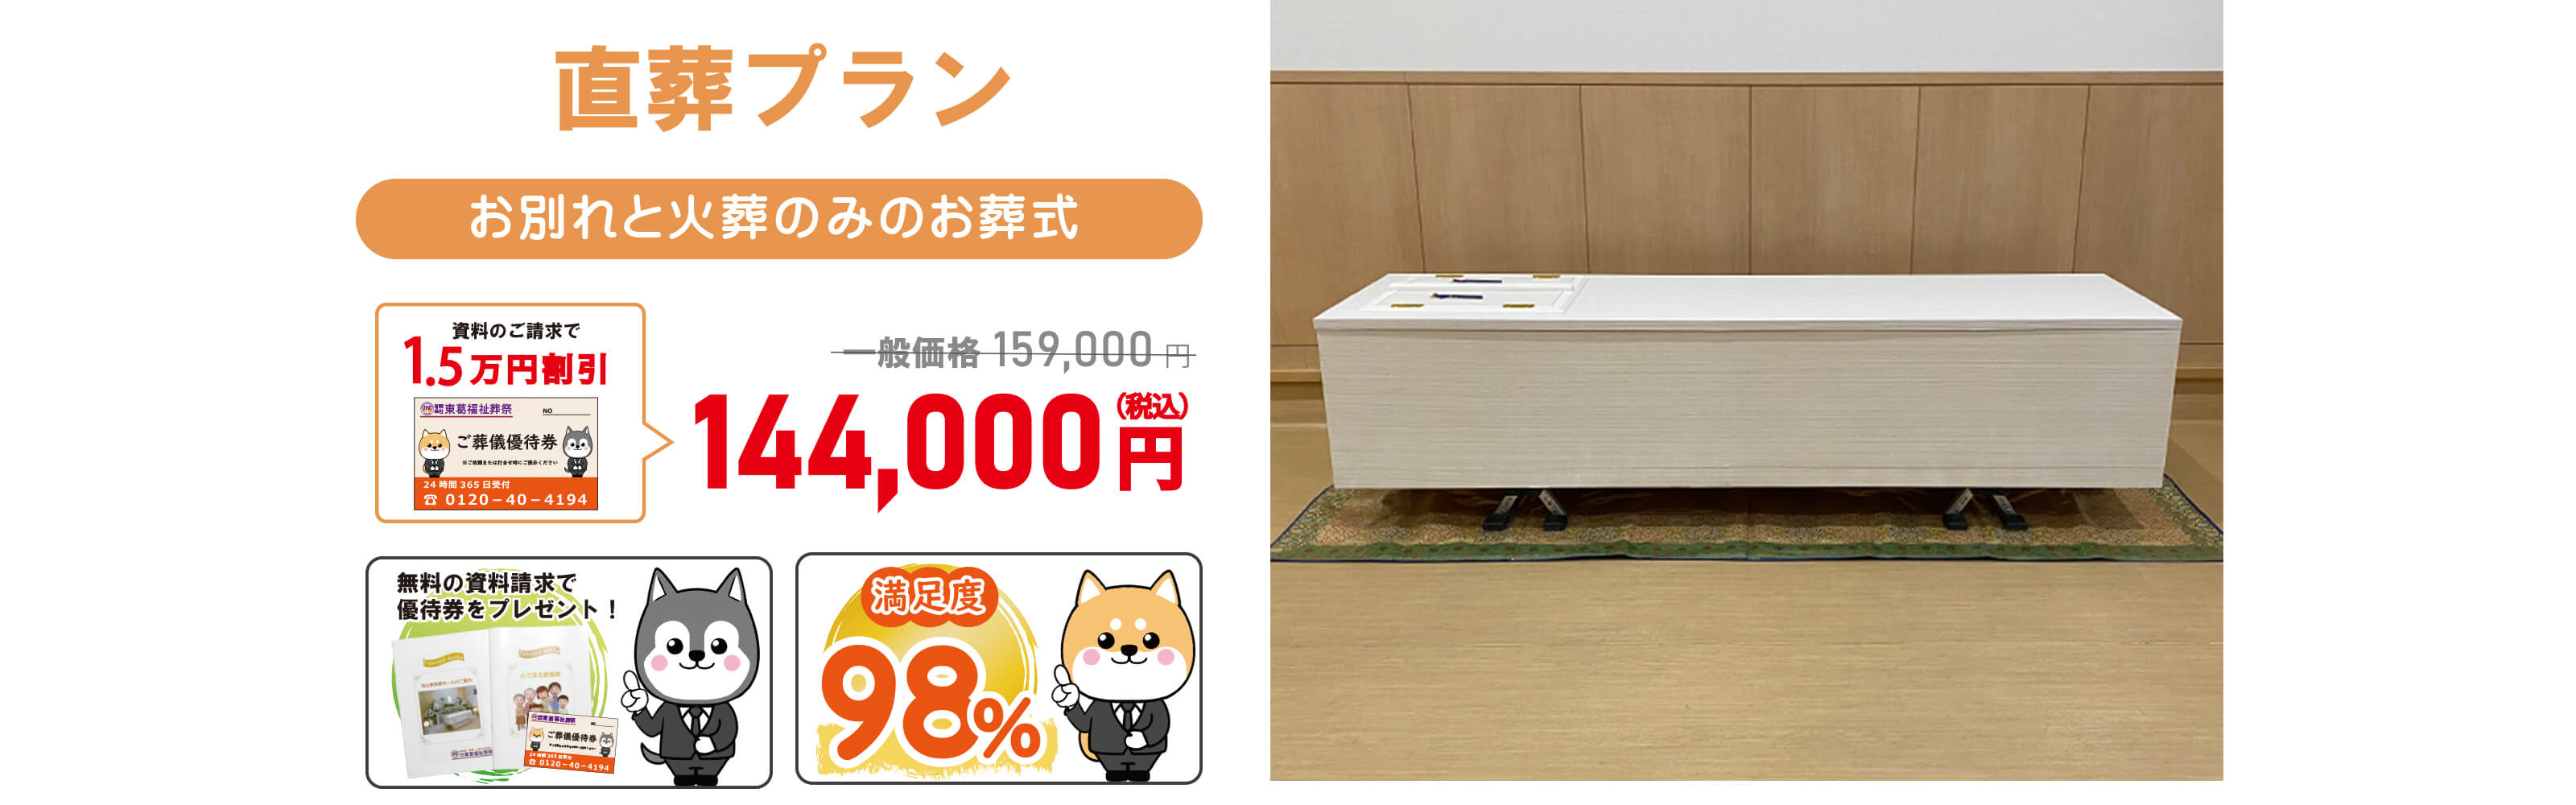 直葬プラン144,000円